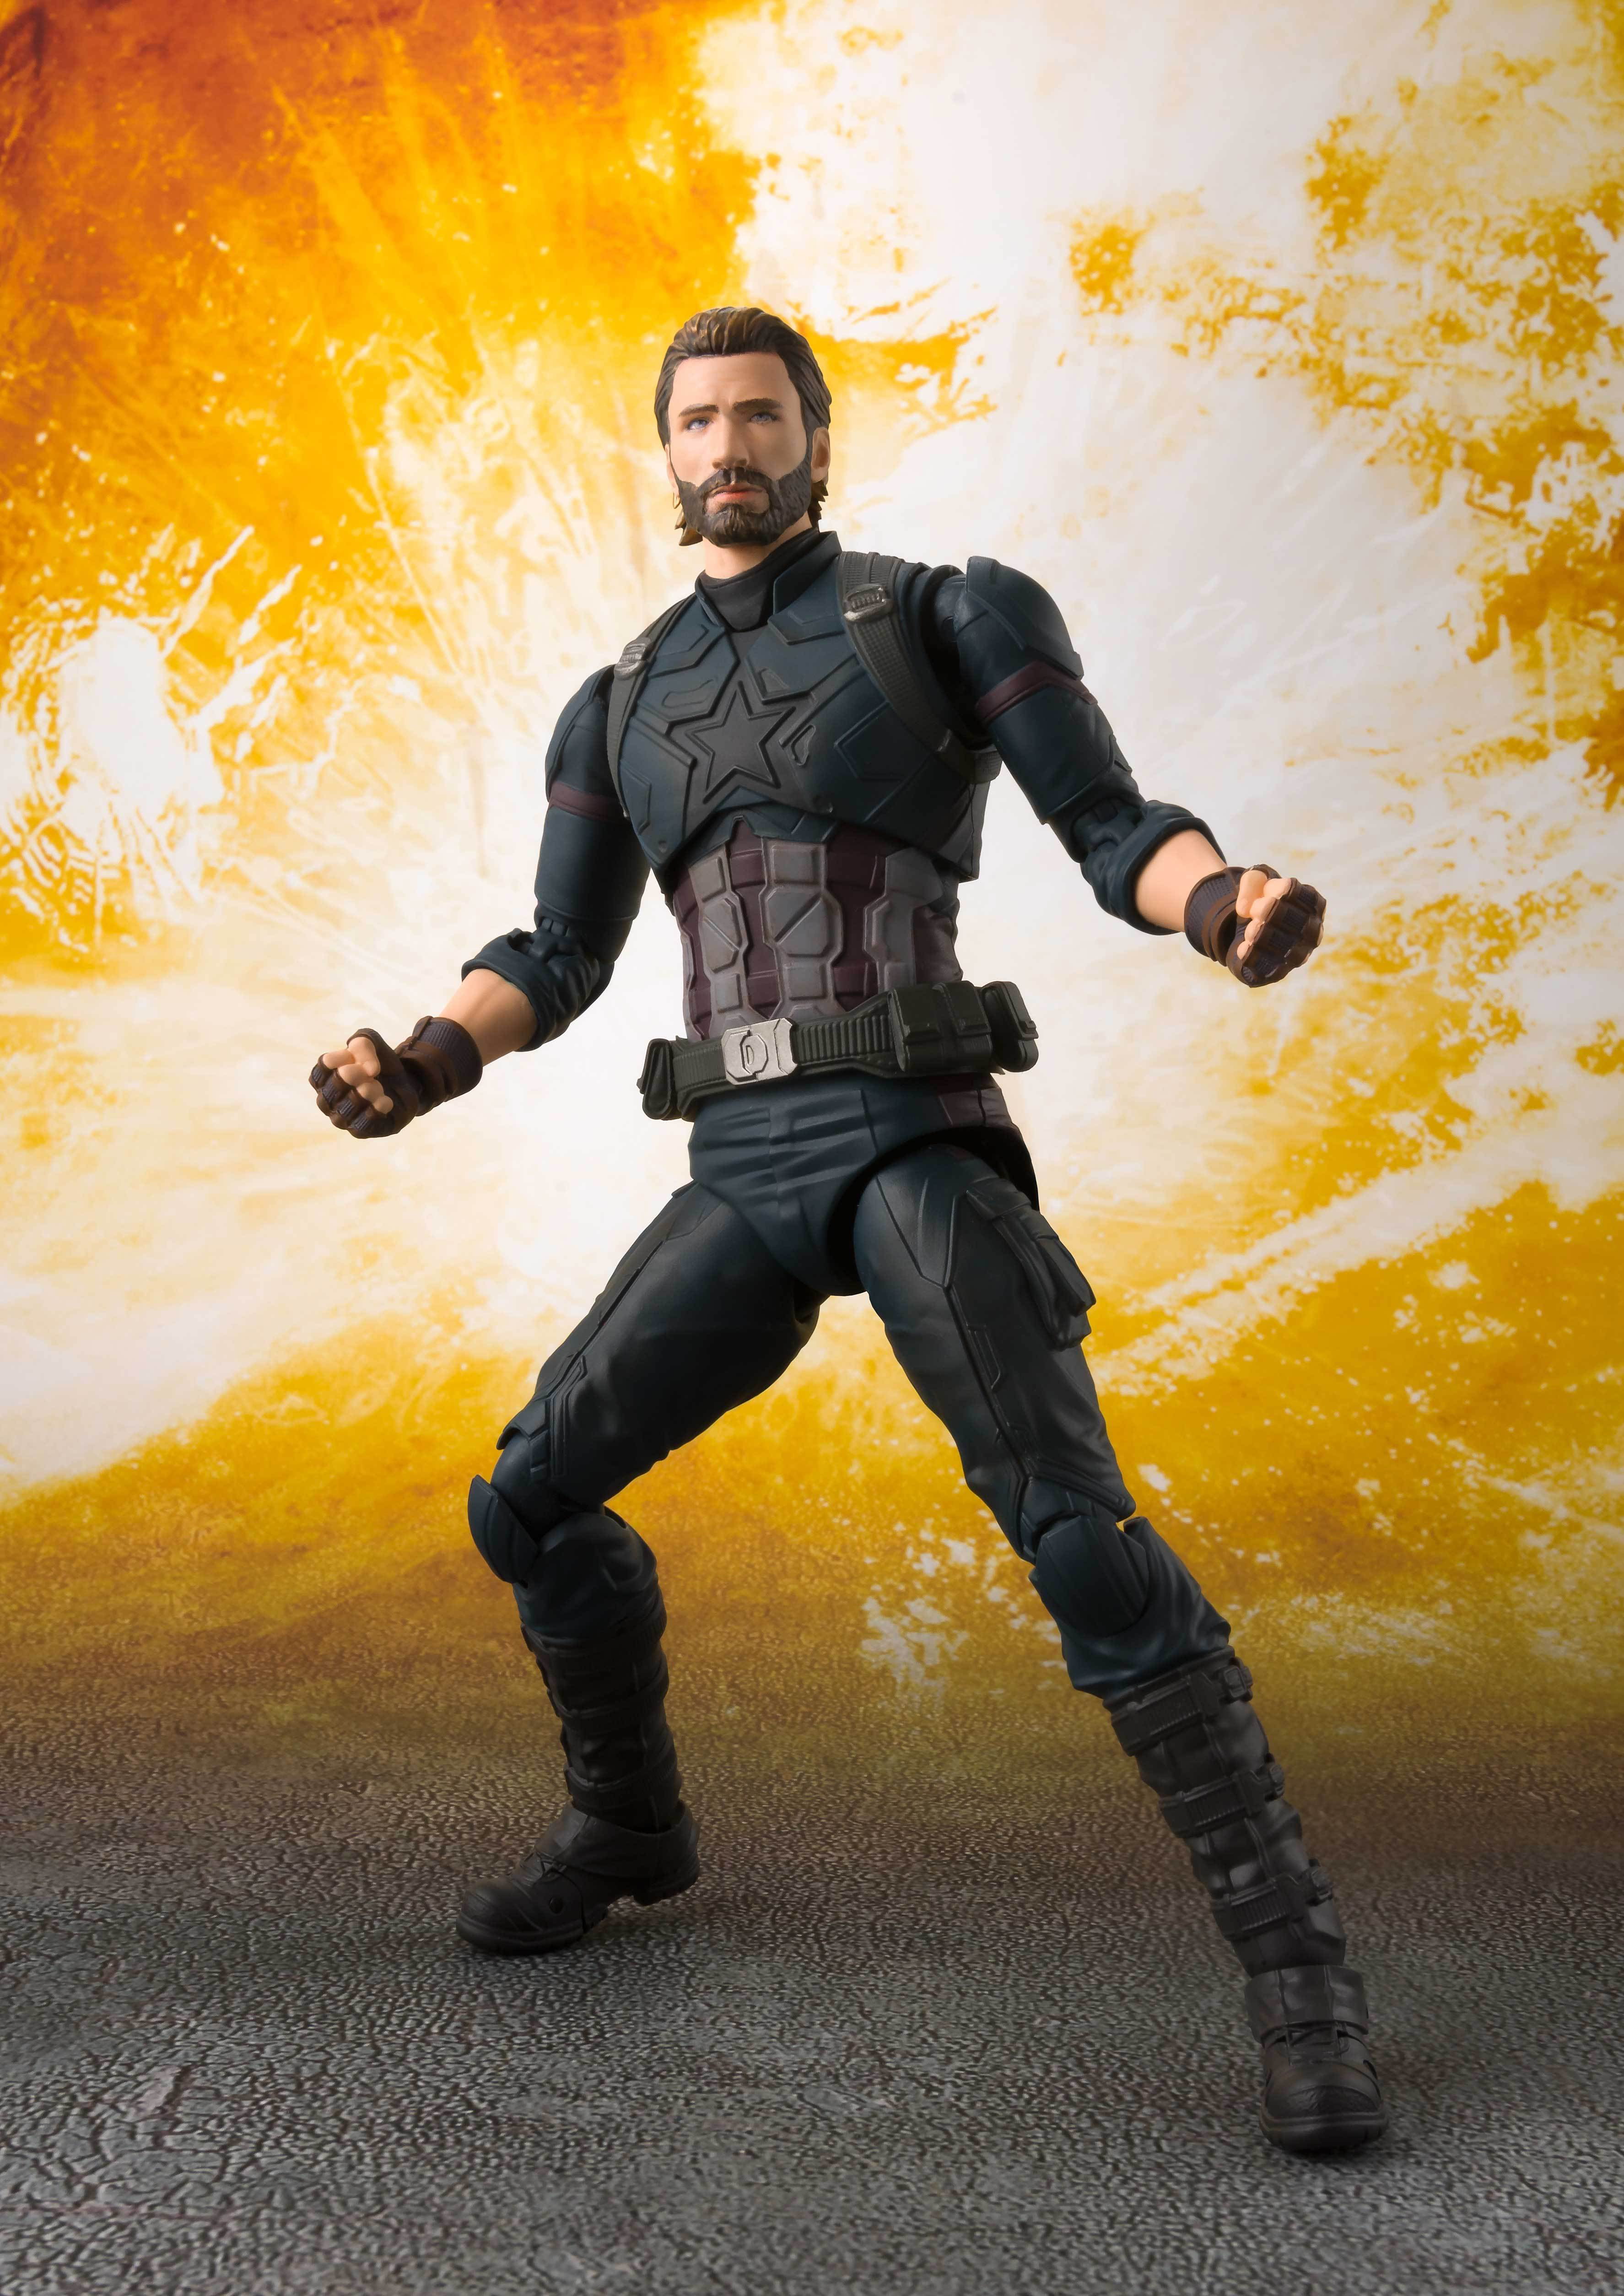 Figurine articulée Bandai Avengers figurine S.H. Figuarts Captain